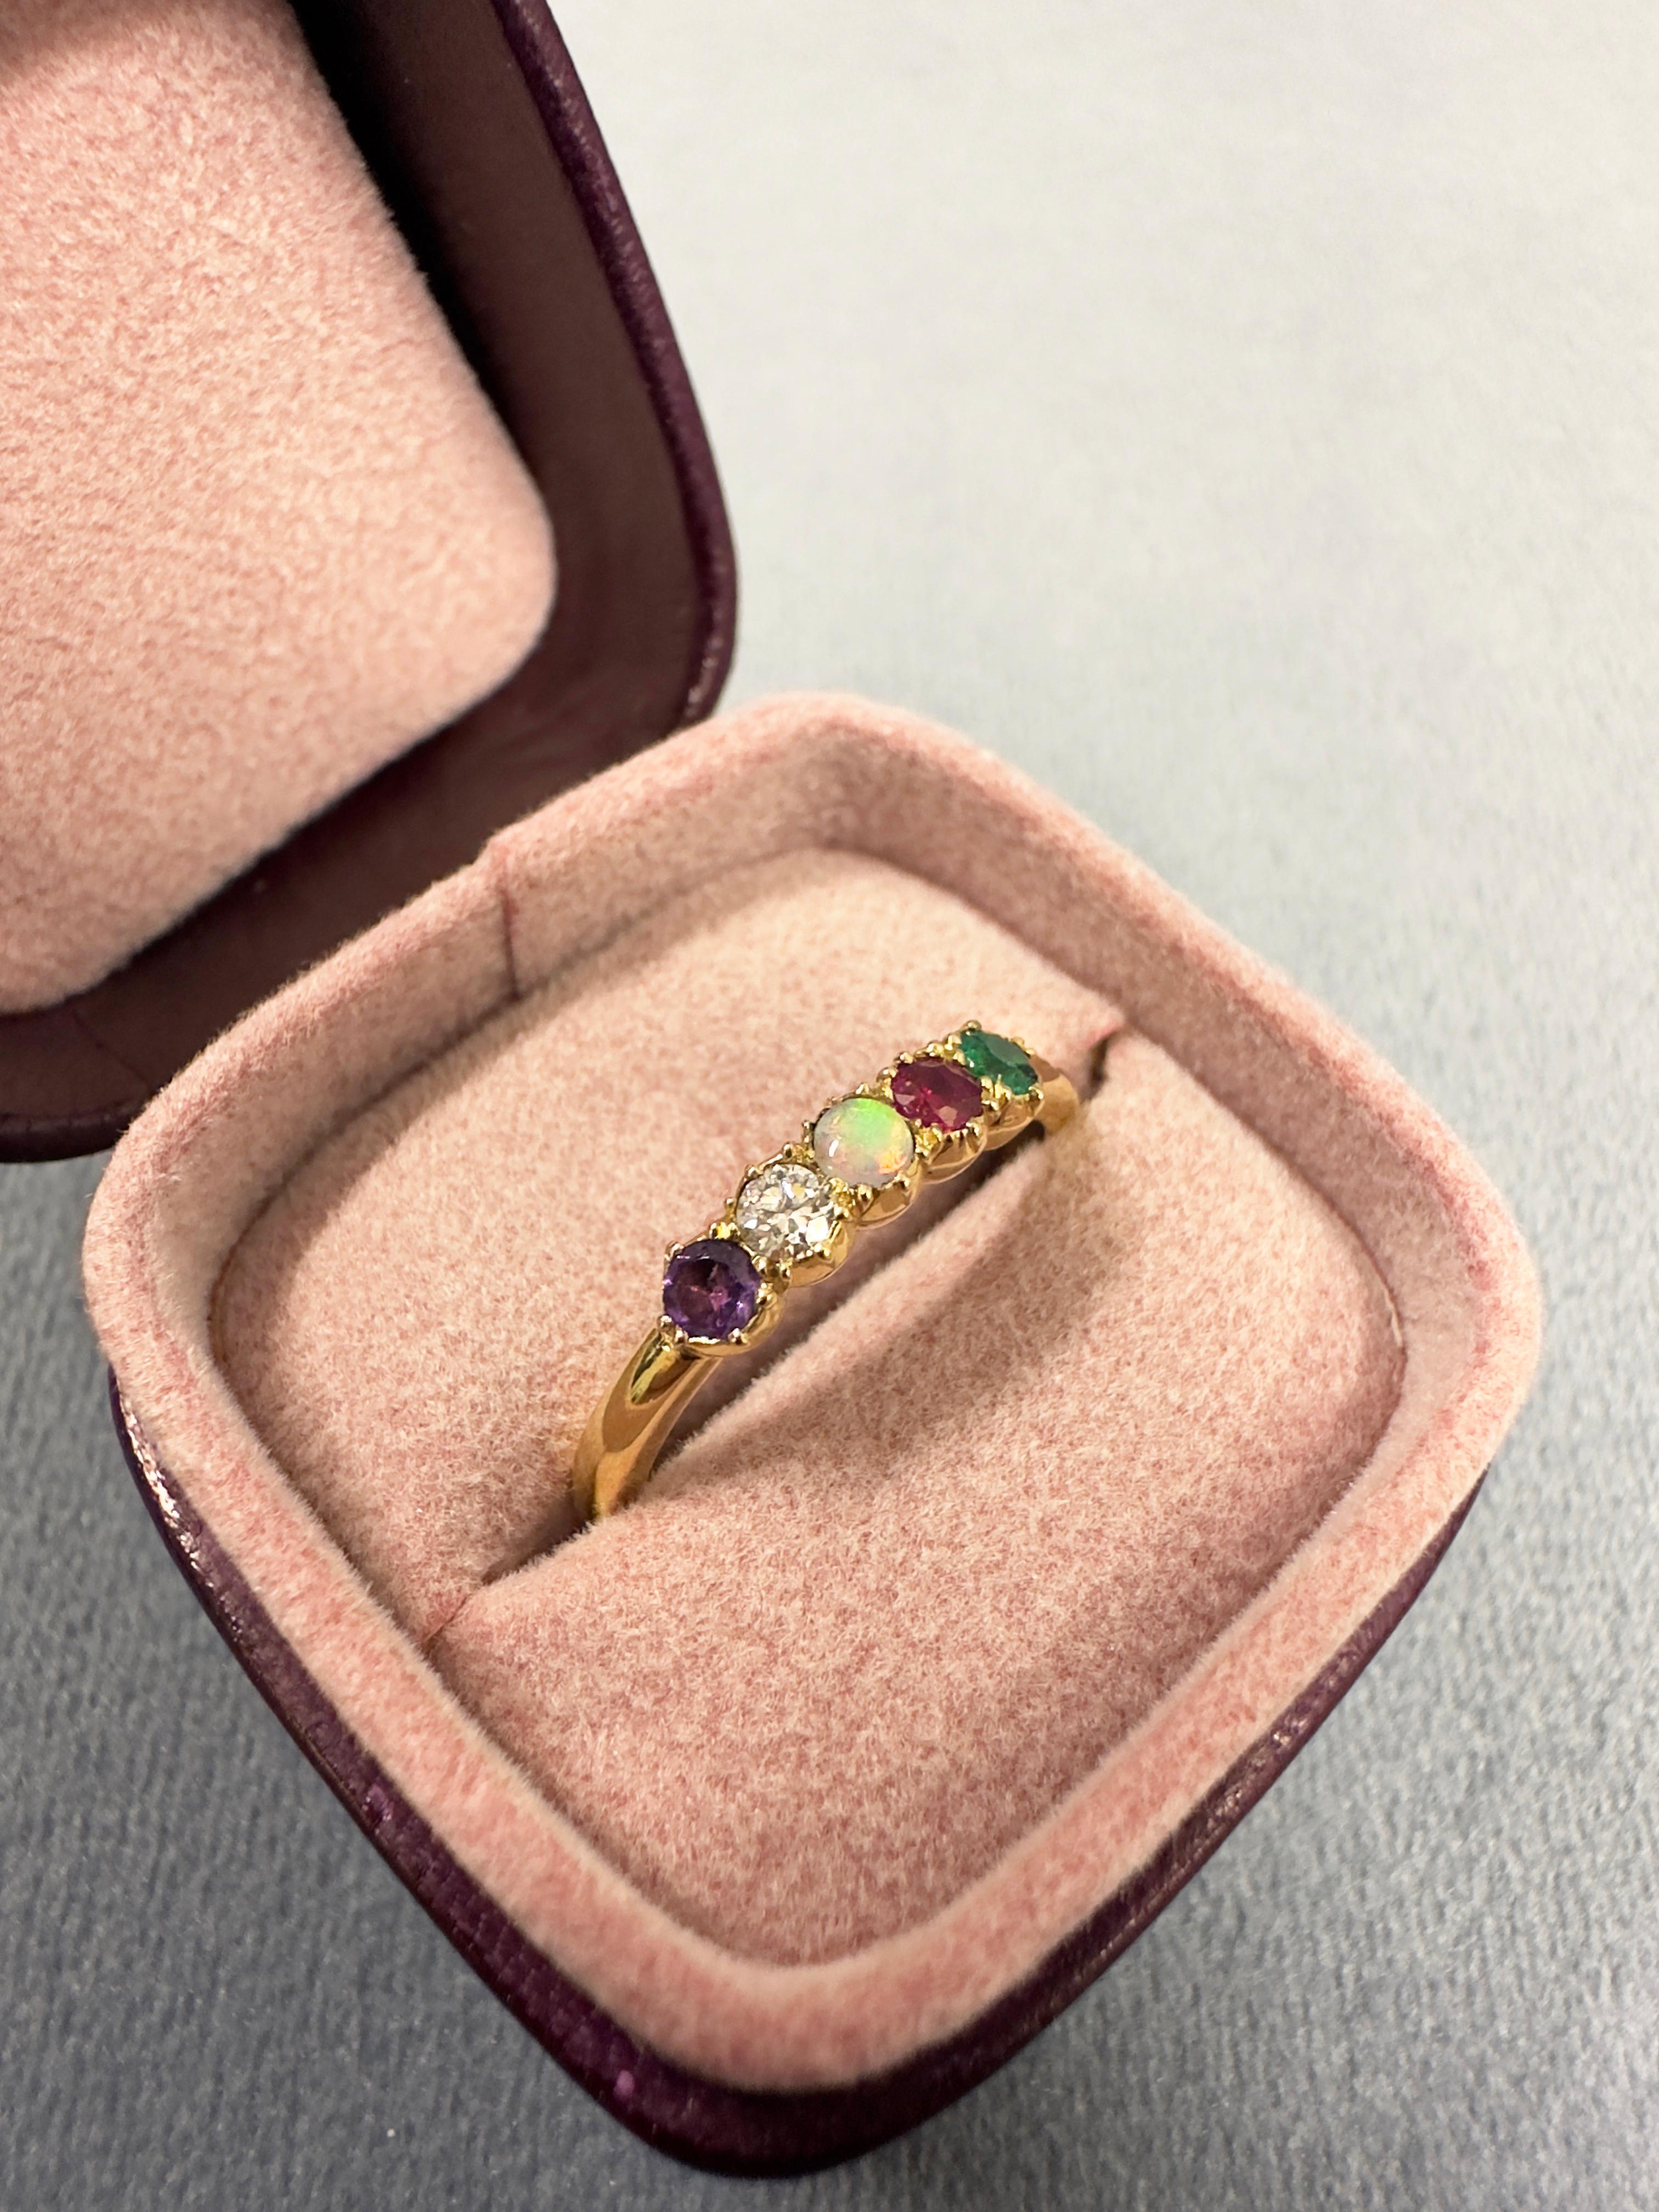 Dieser sehr hübsche Ring verbirgt eine geheime Akrostichon-Botschaft, d.h. der erste Buchstabe eines jeden Edelsteins steht für ein Wort. In diesem Fall sind es ein Amethyst, ein Diamant, ein Opal, ein Rubin und ein Smaragd, die das Wort 